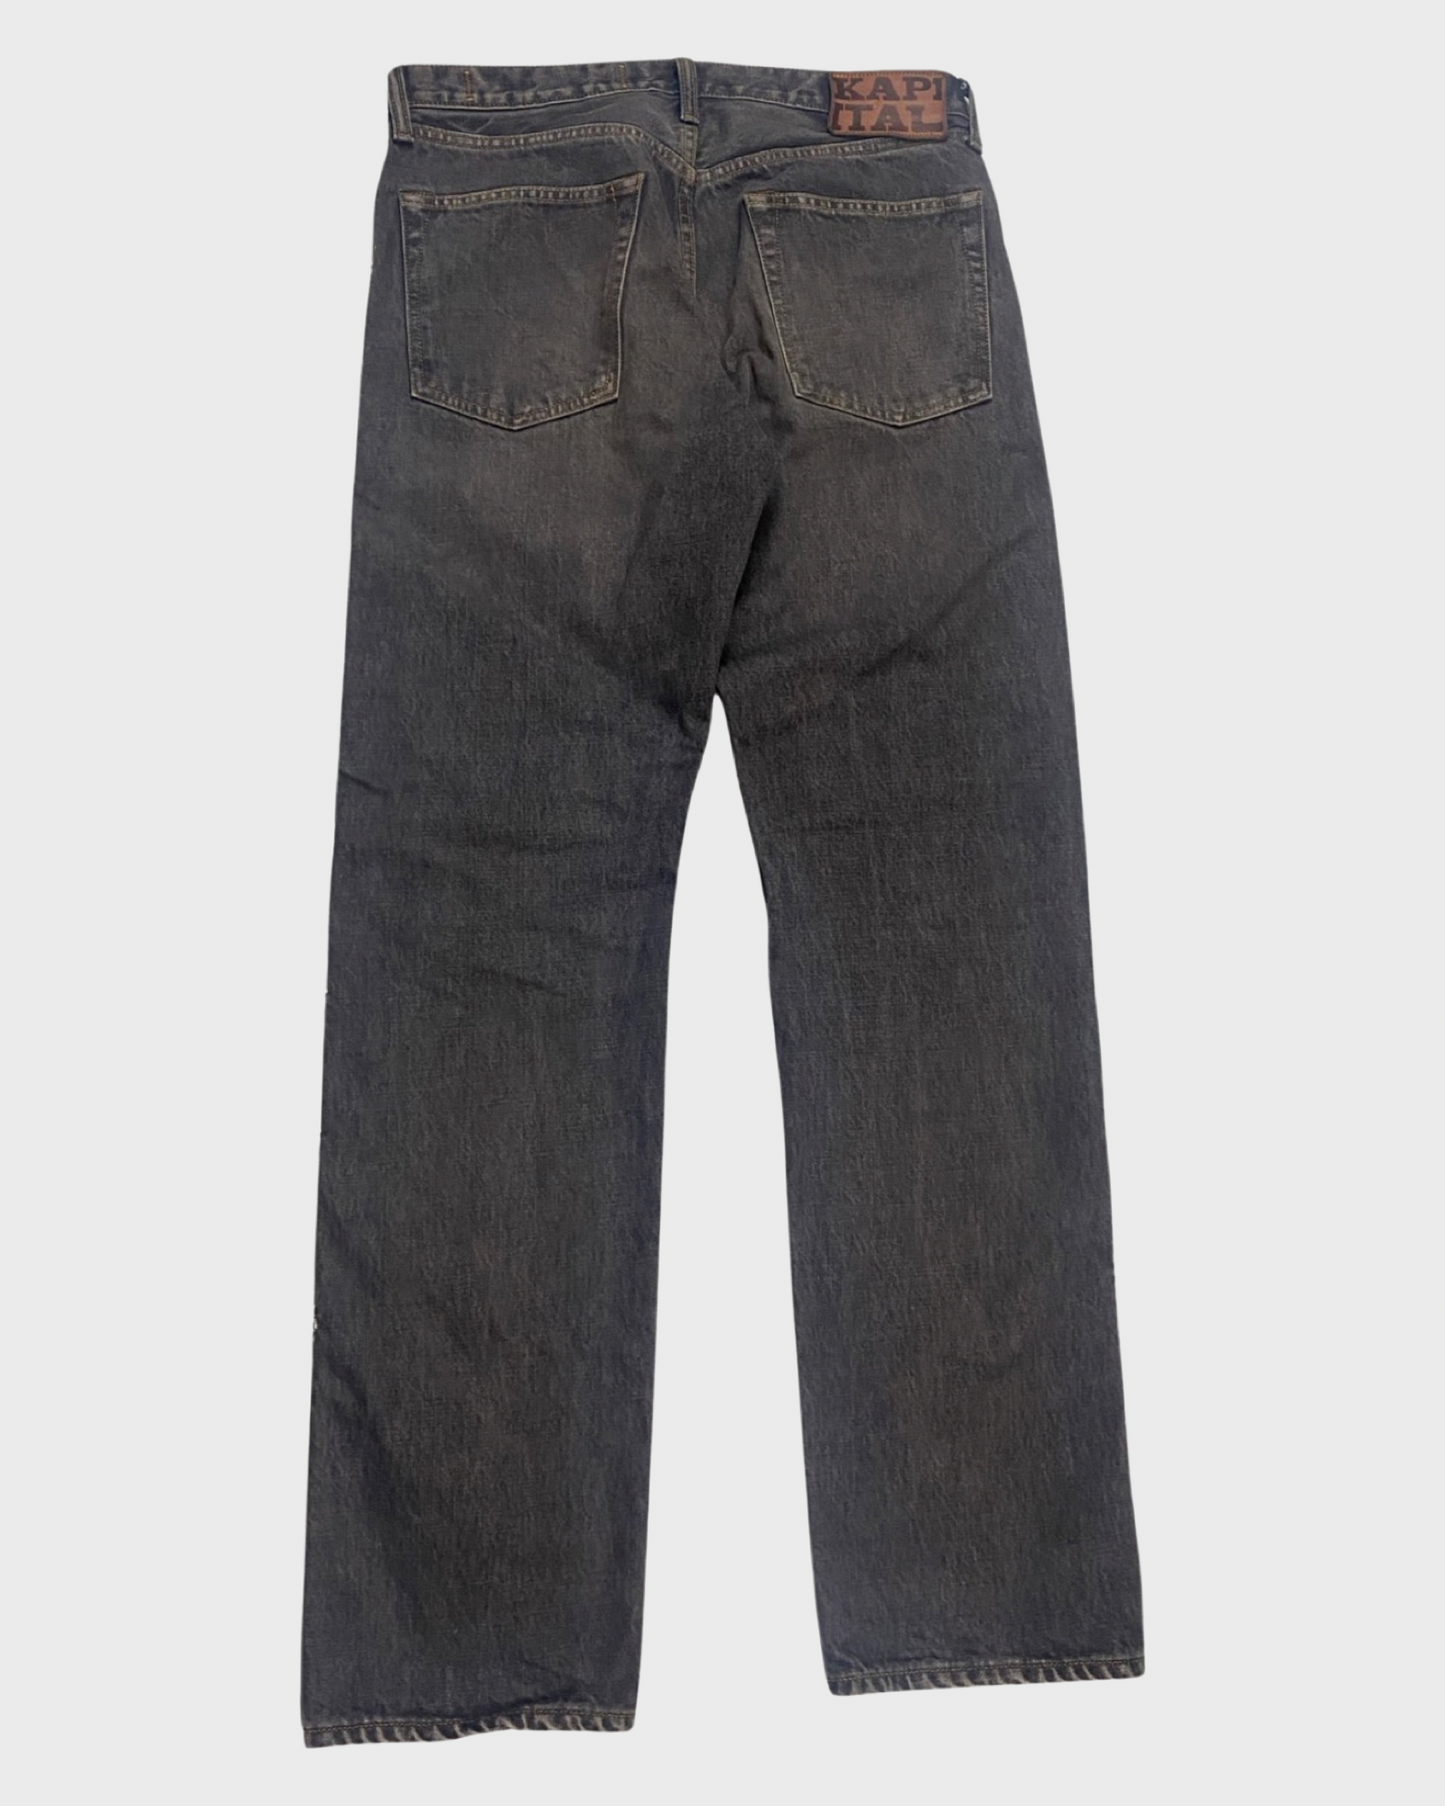 Kapital grey gemstone jeans SZ:W32